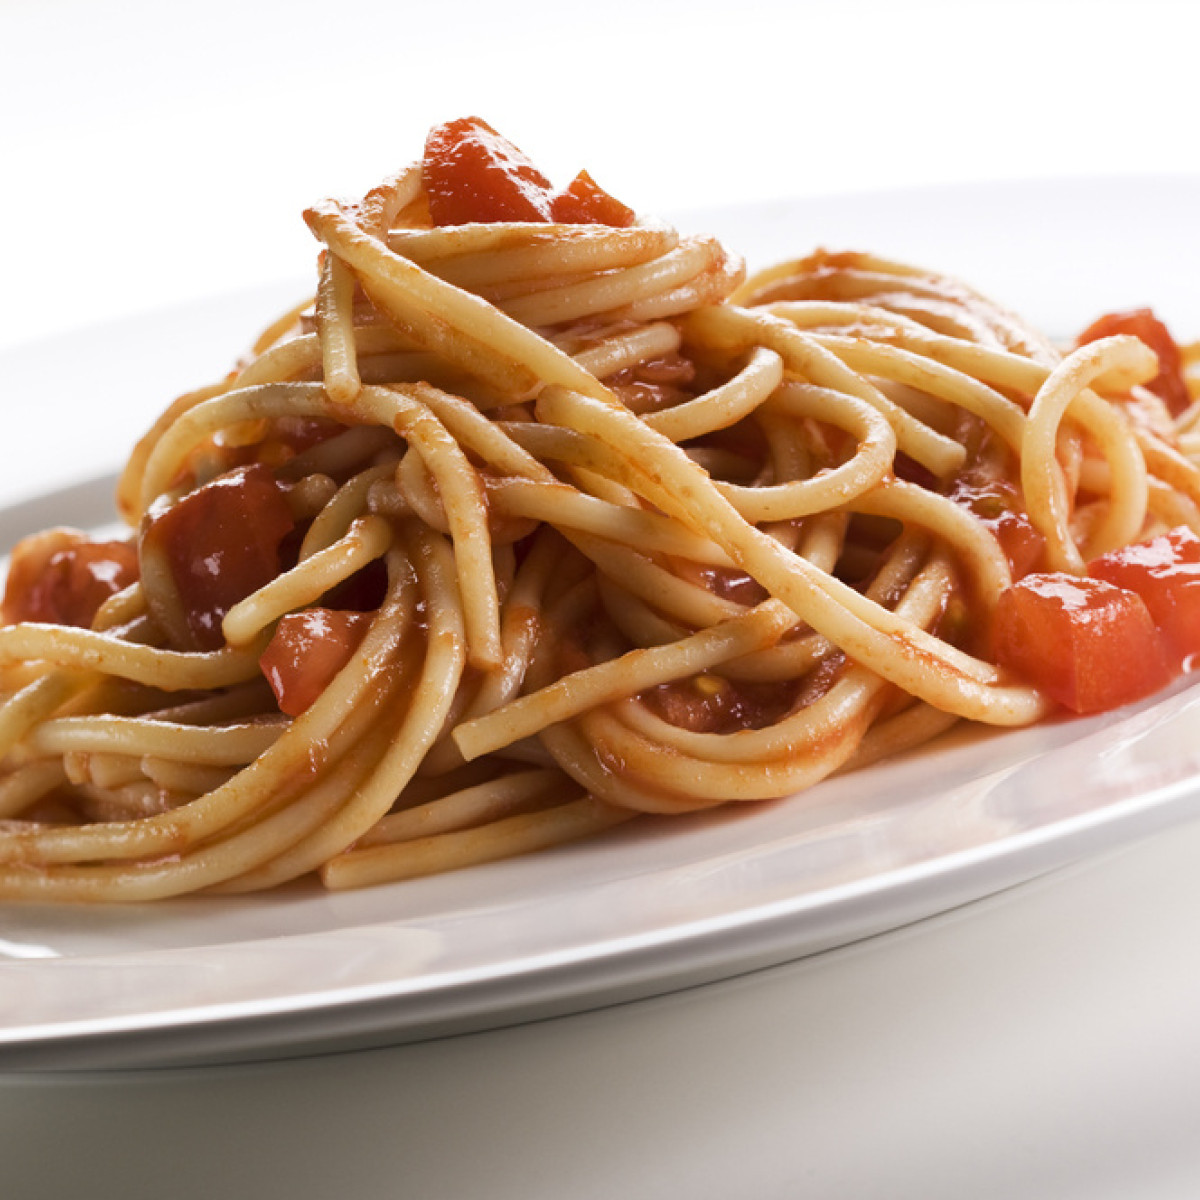 Spaghetti z aromatem bazylii